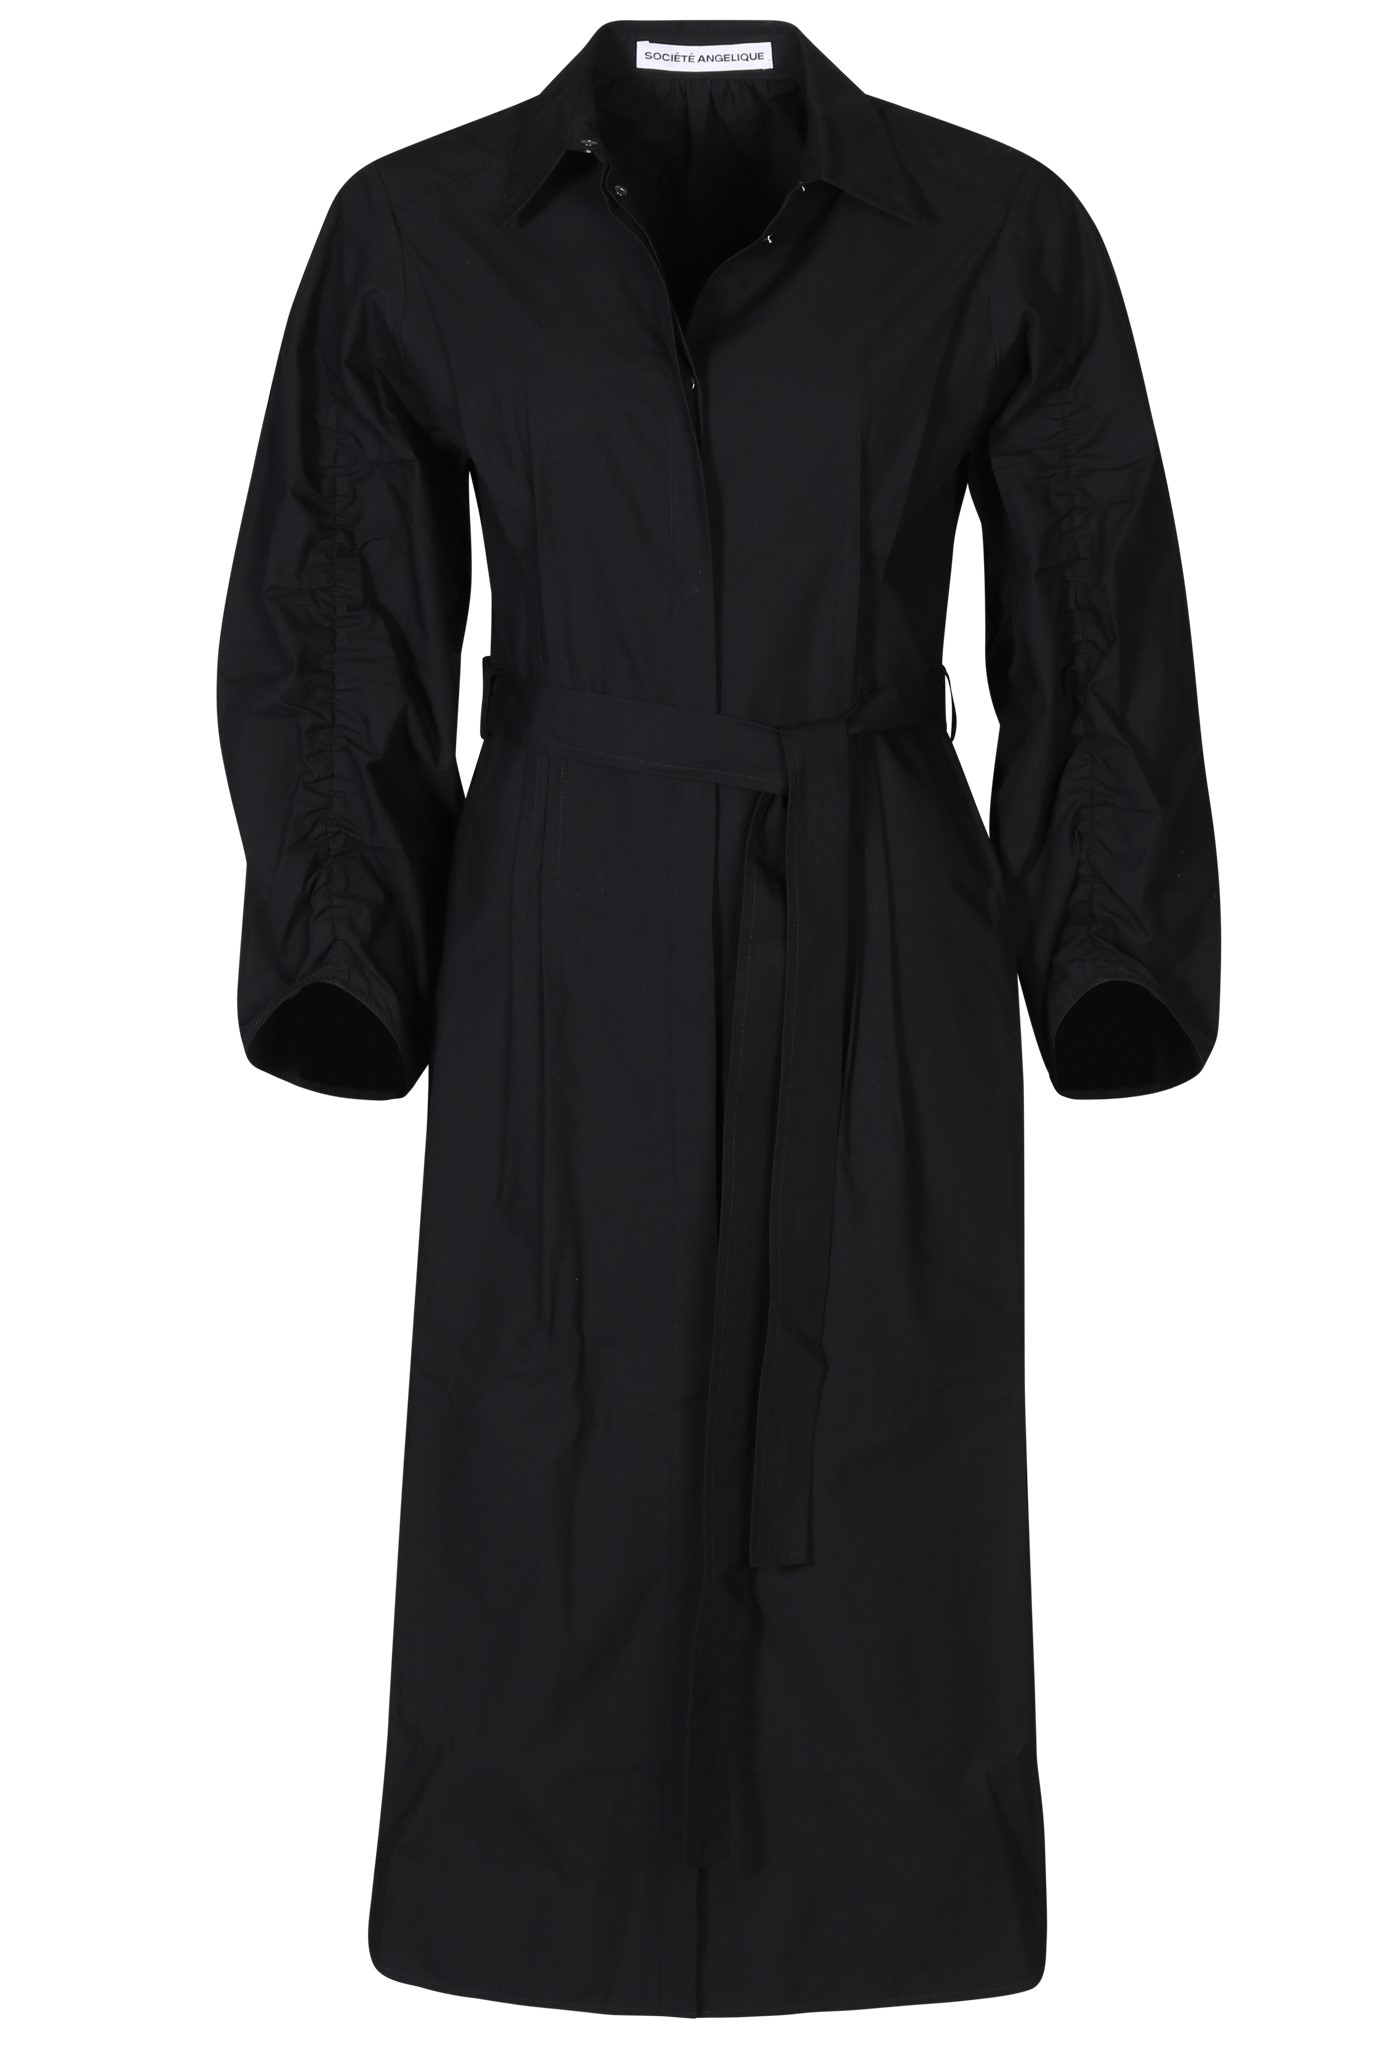 SOCIÉTÉ ANGELIQUE Ana Cotton Dress in Black 34